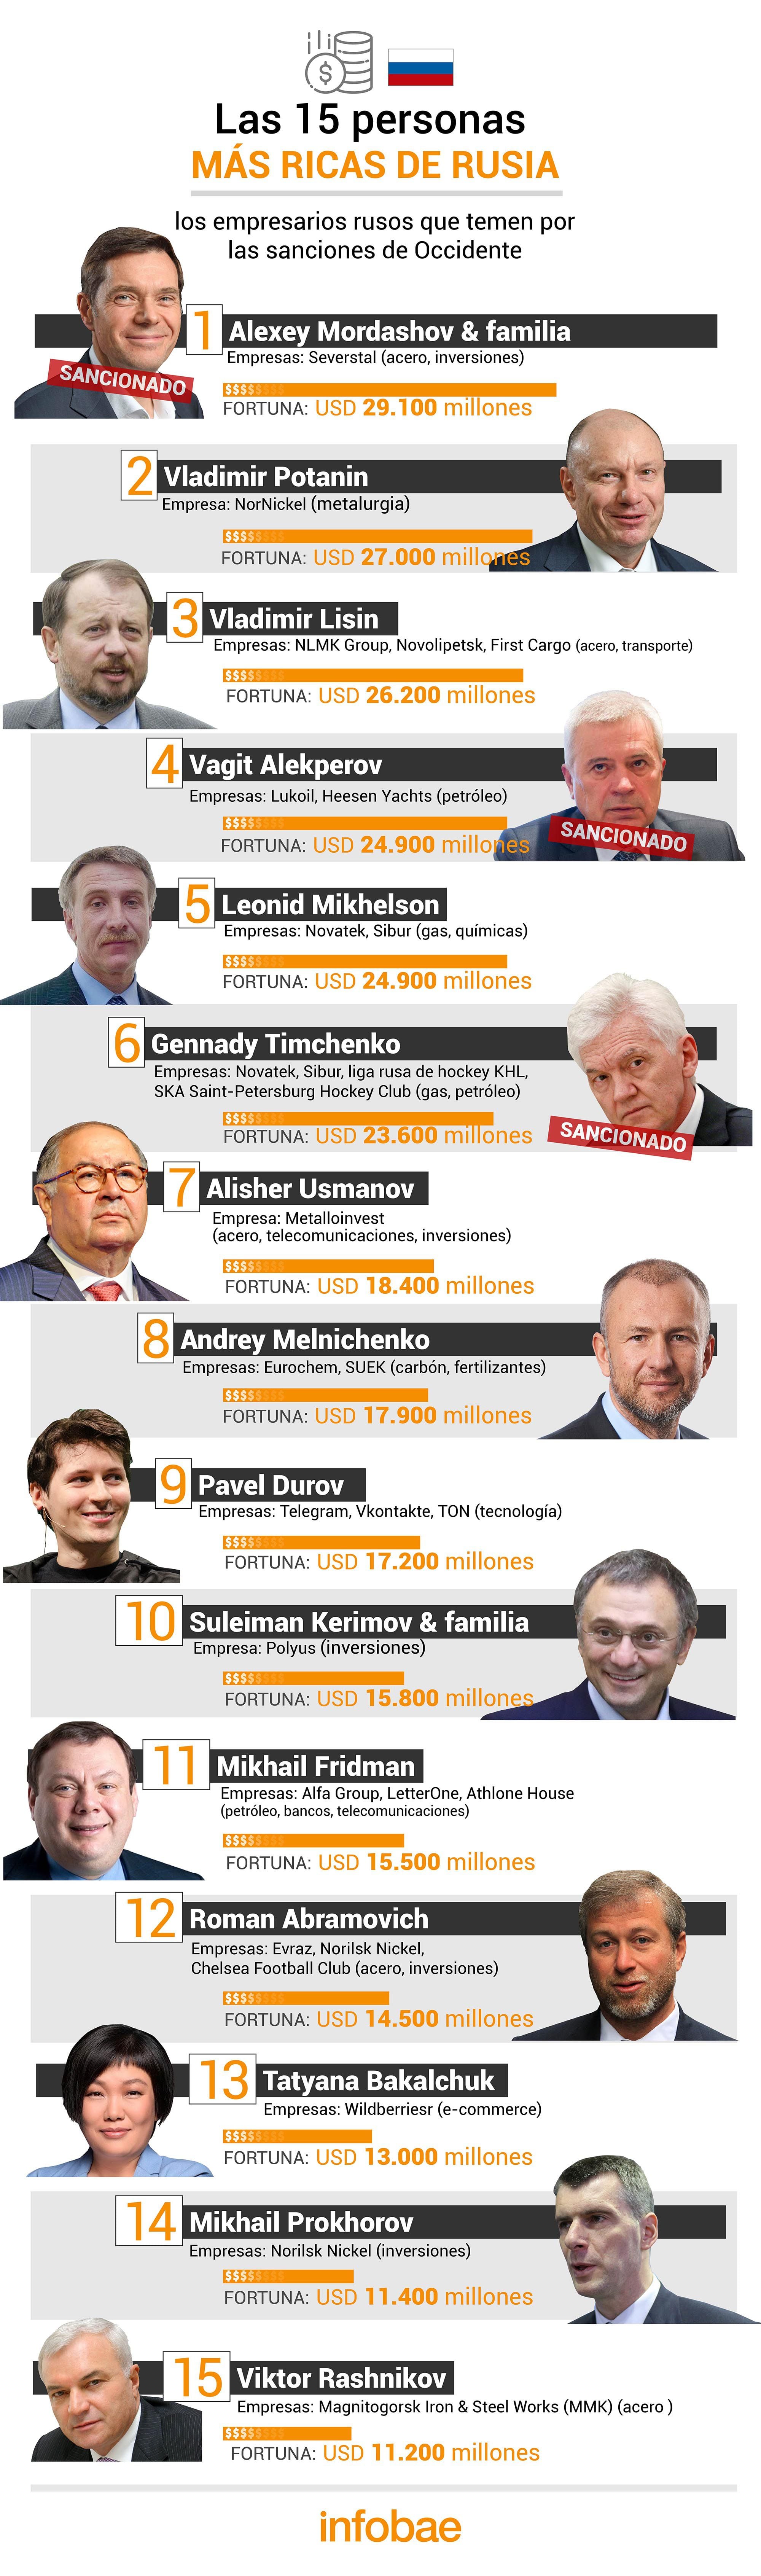 Las 15 personas más ricas de Rusia 